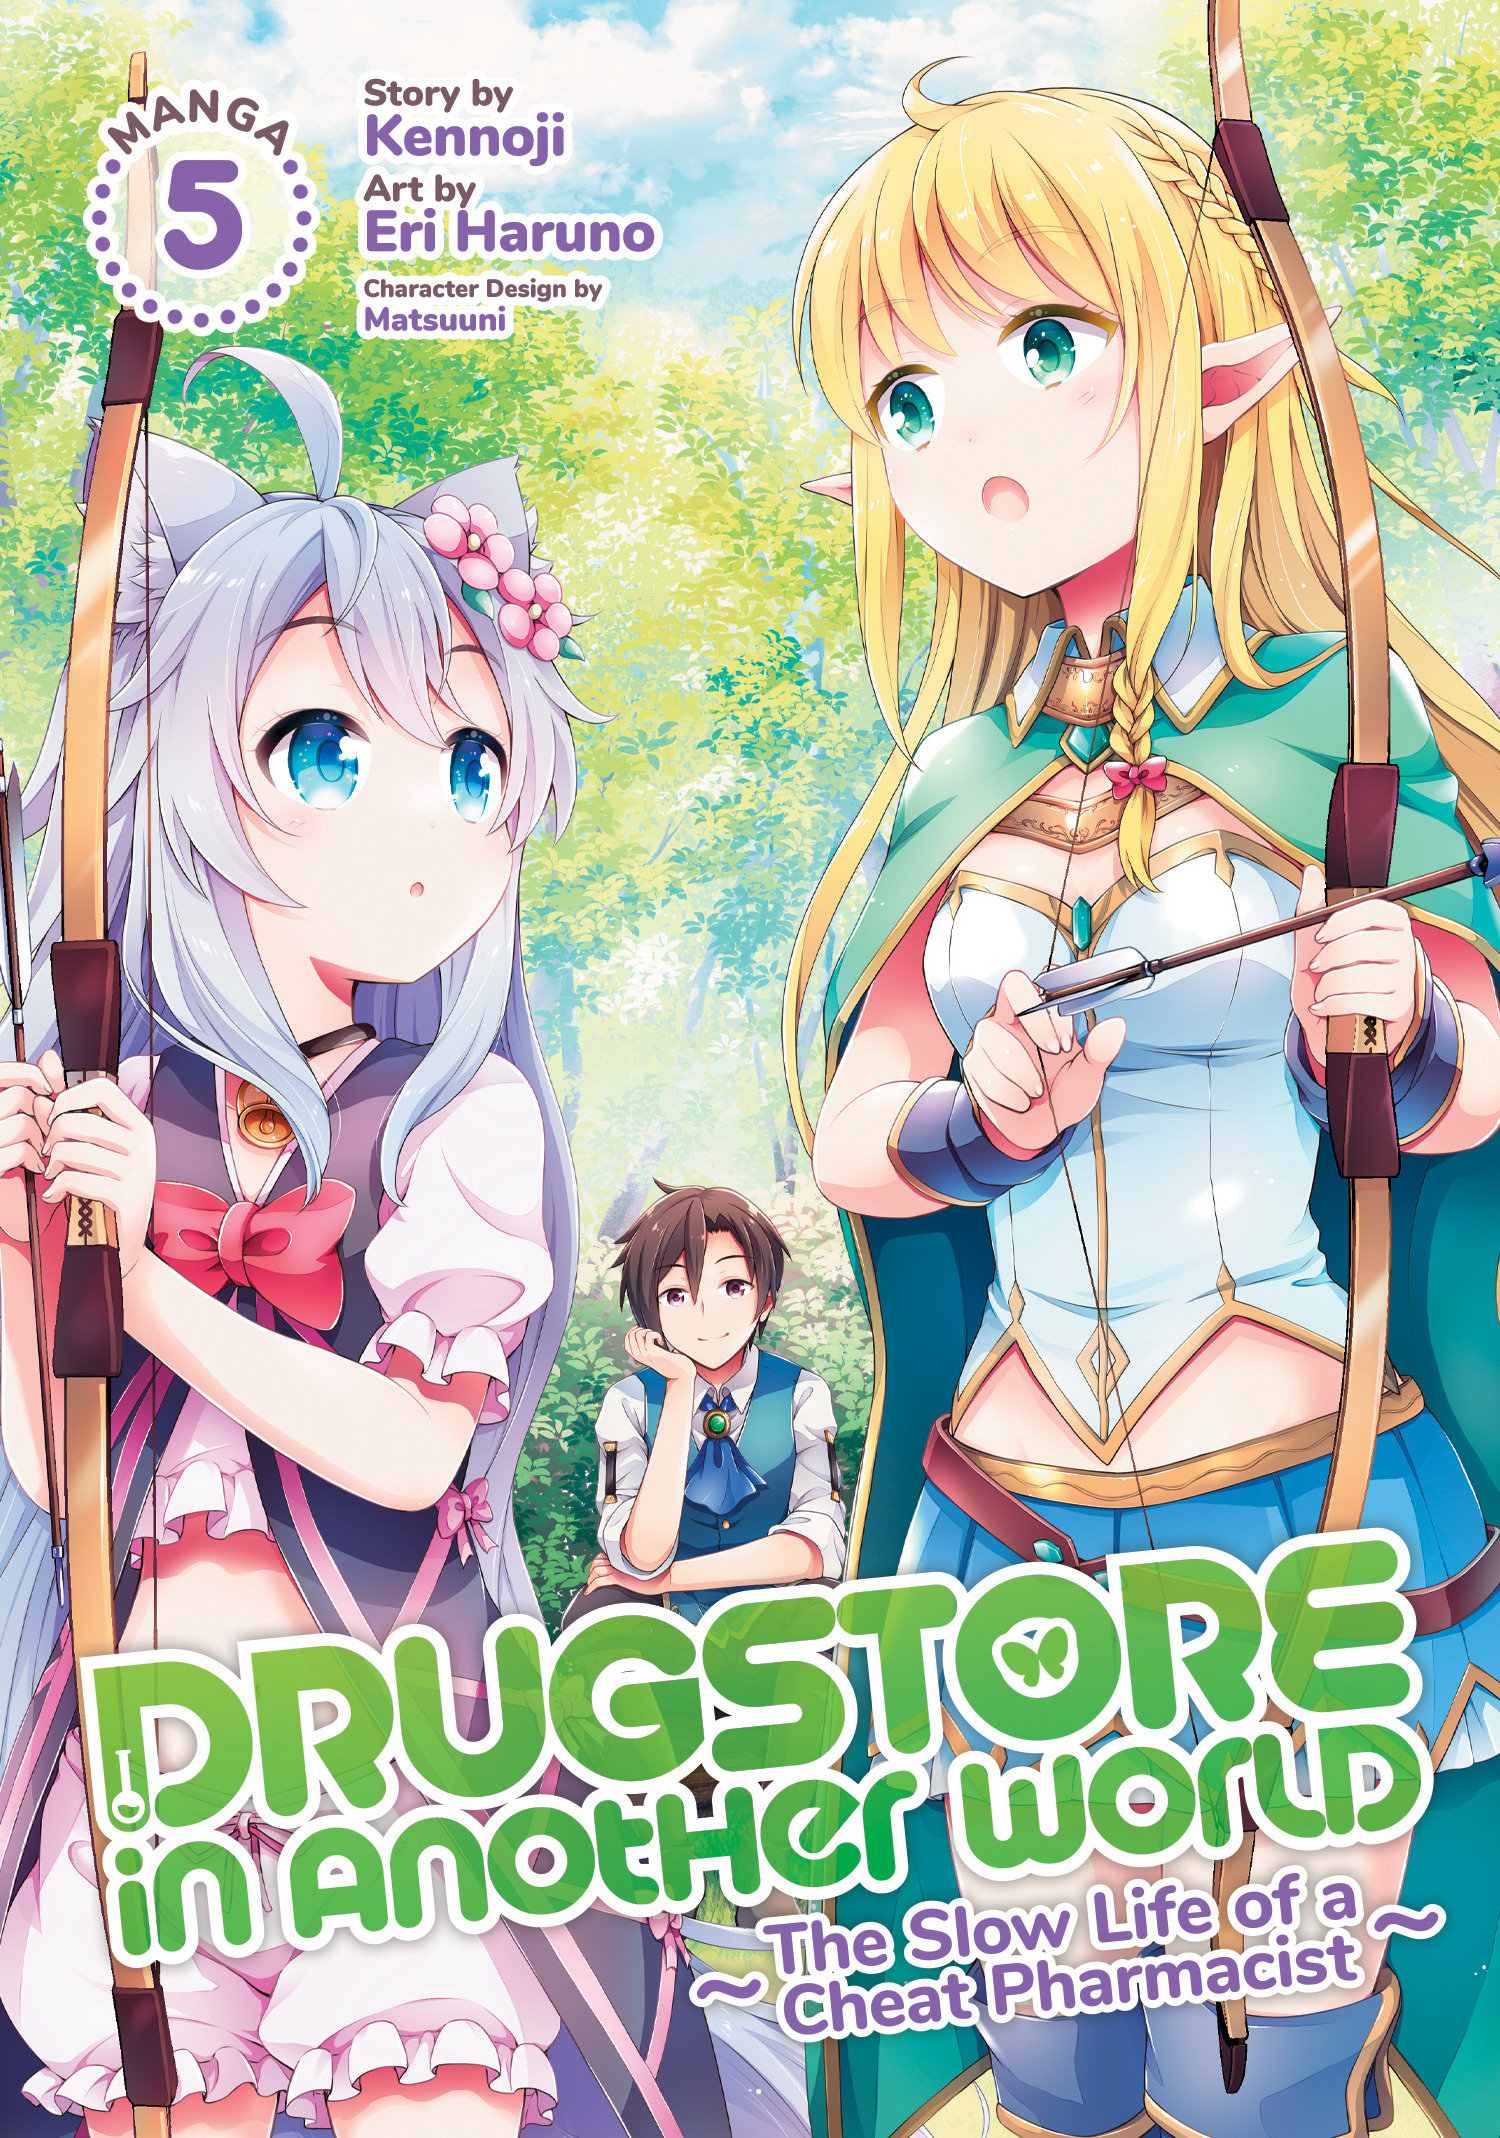 Drugstore in Another World Cheat Pharmacist Manga Volume 5